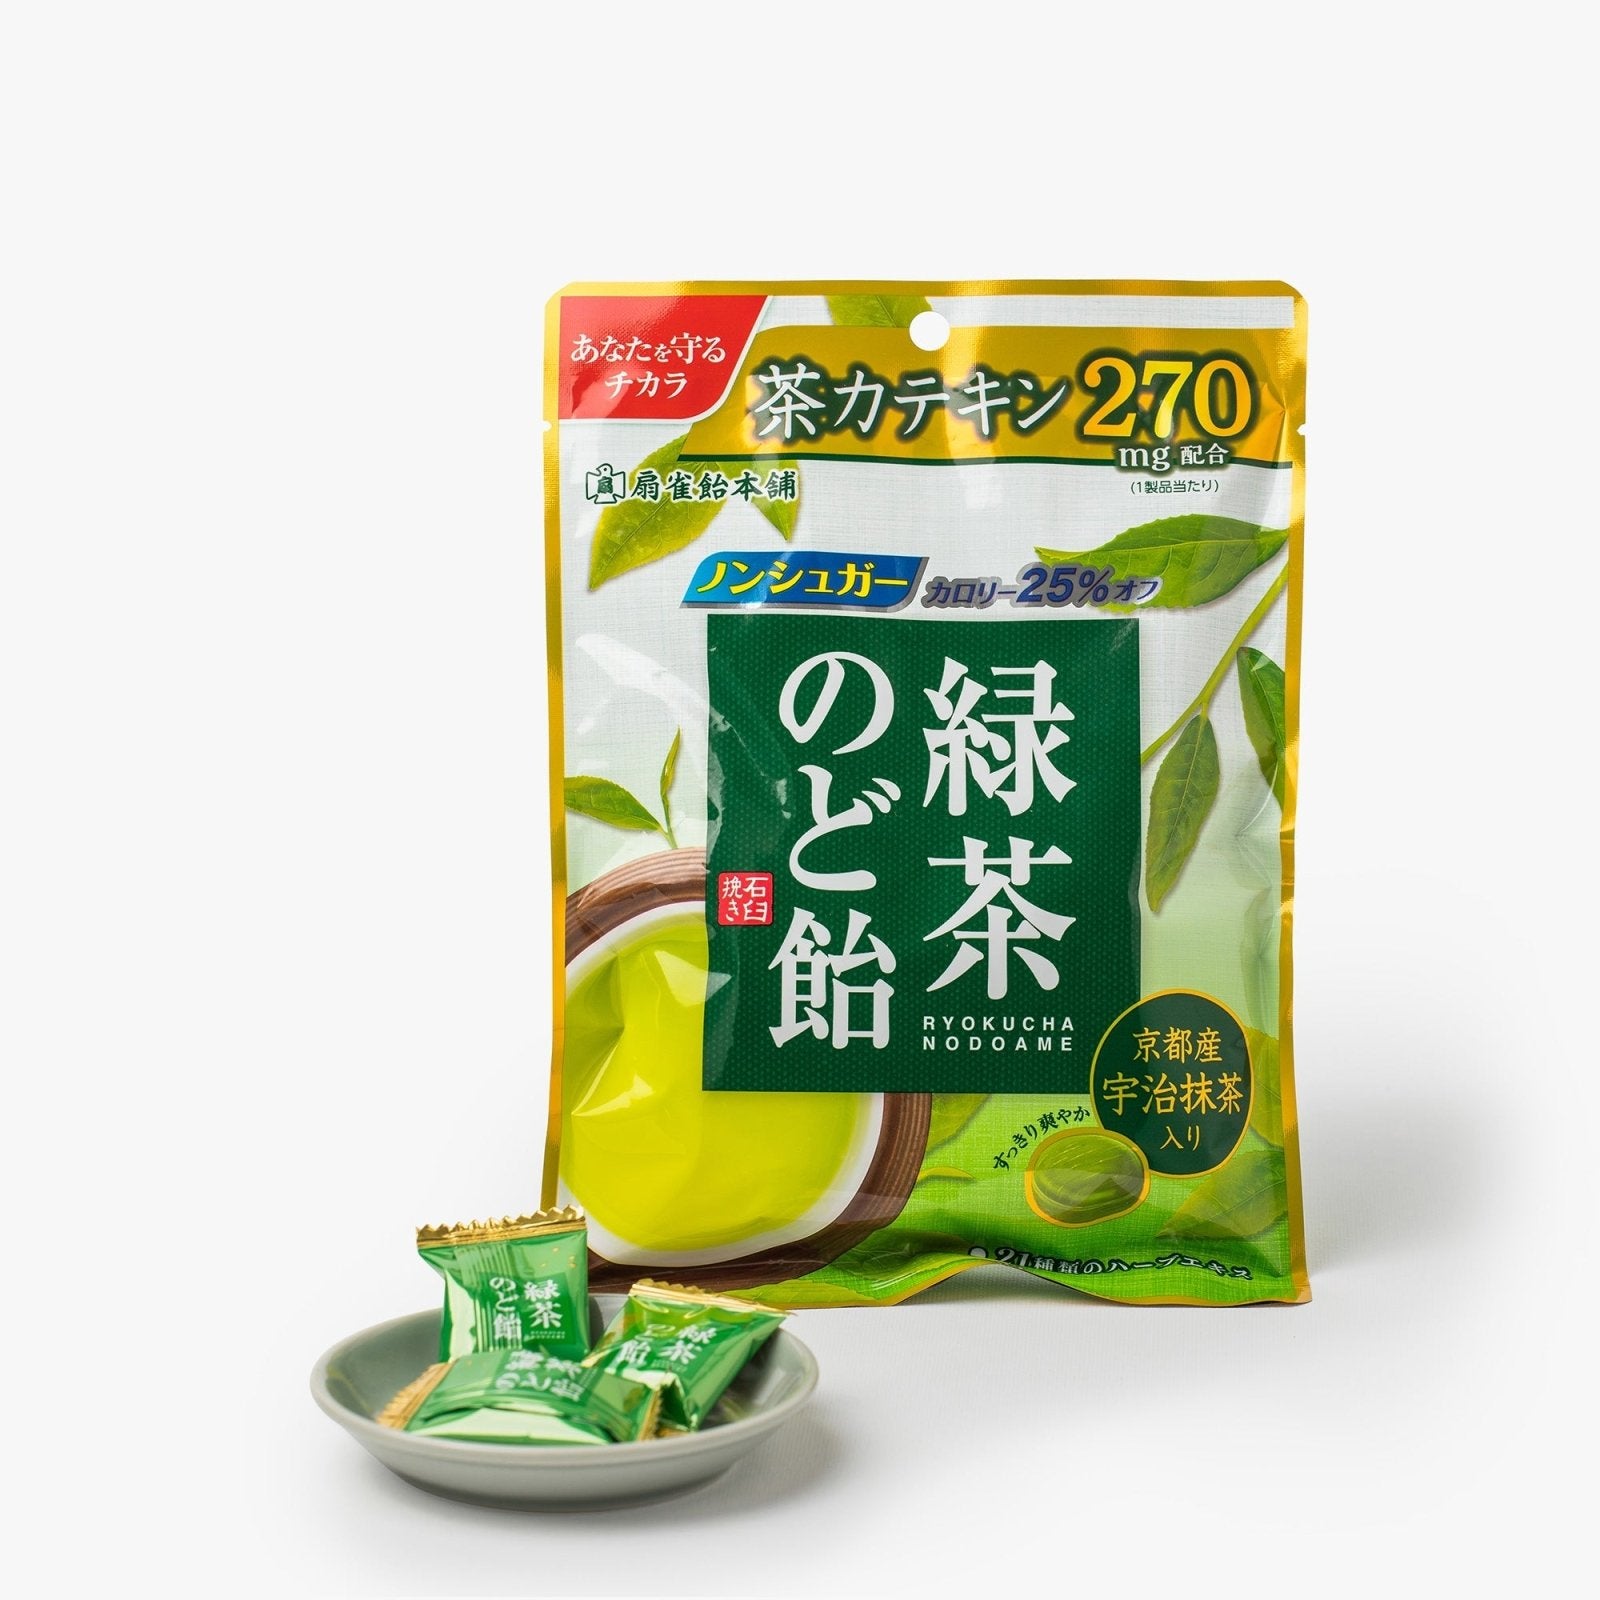 Pastilles pour la gorge au thé vert - 100g - Senjaku - iRASSHAi